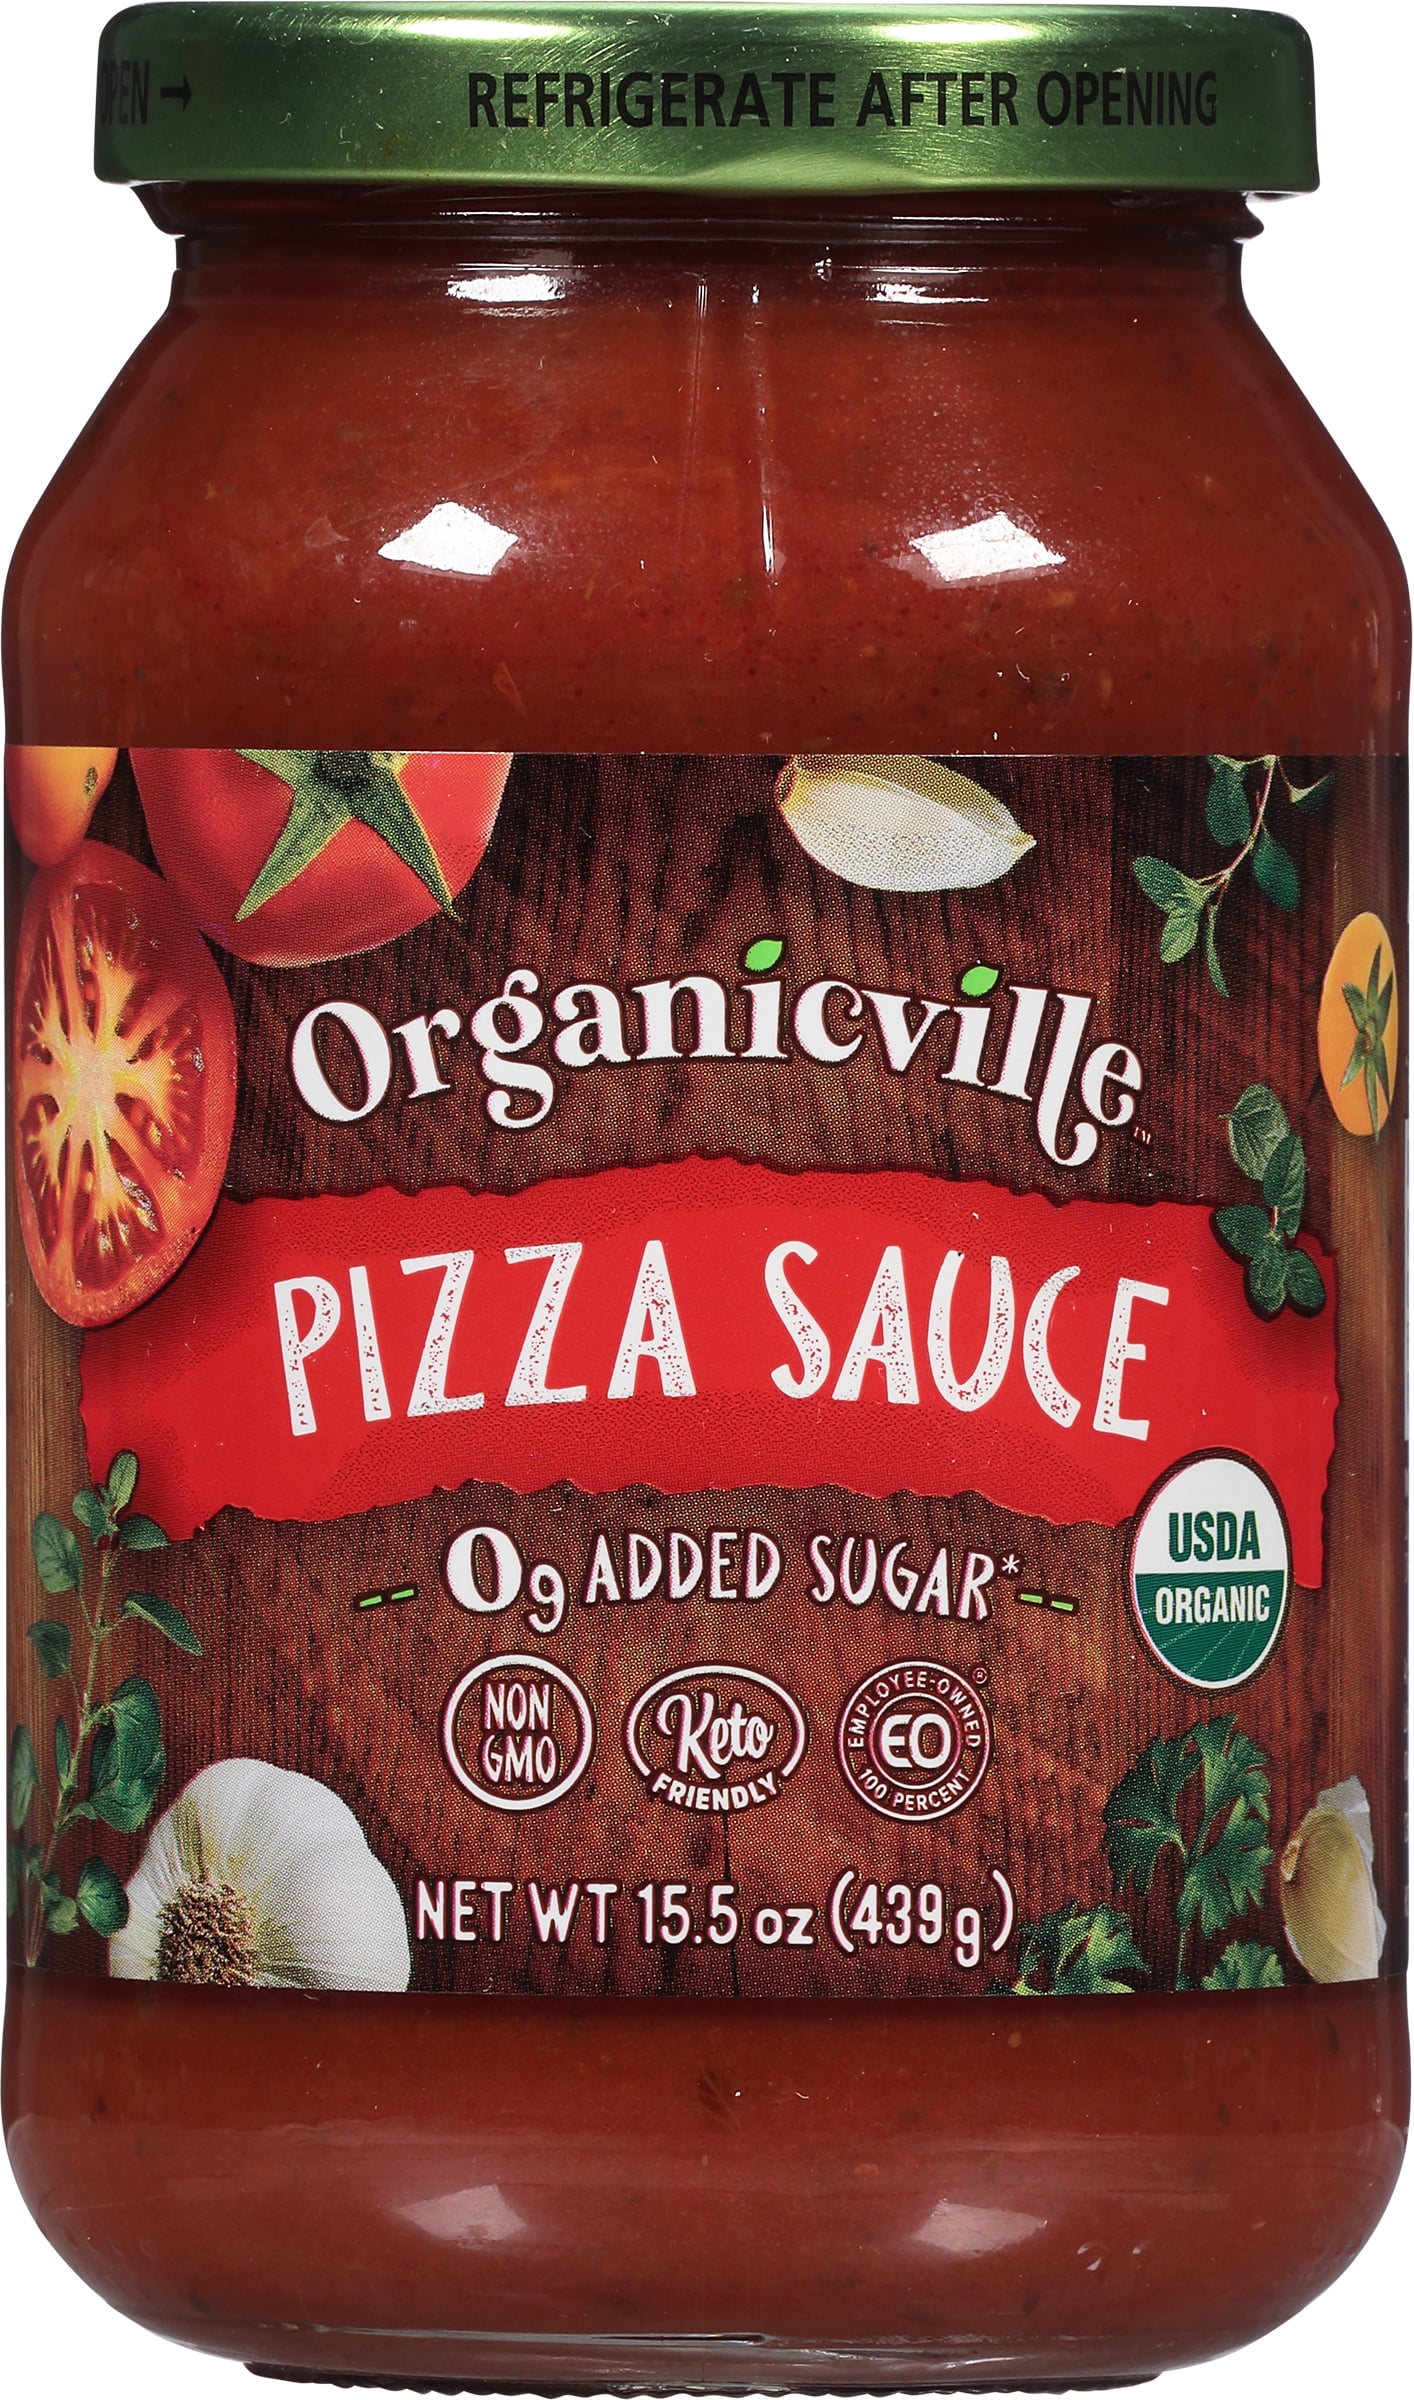 Organicville Pizza Sauce Organic - Gluten Free